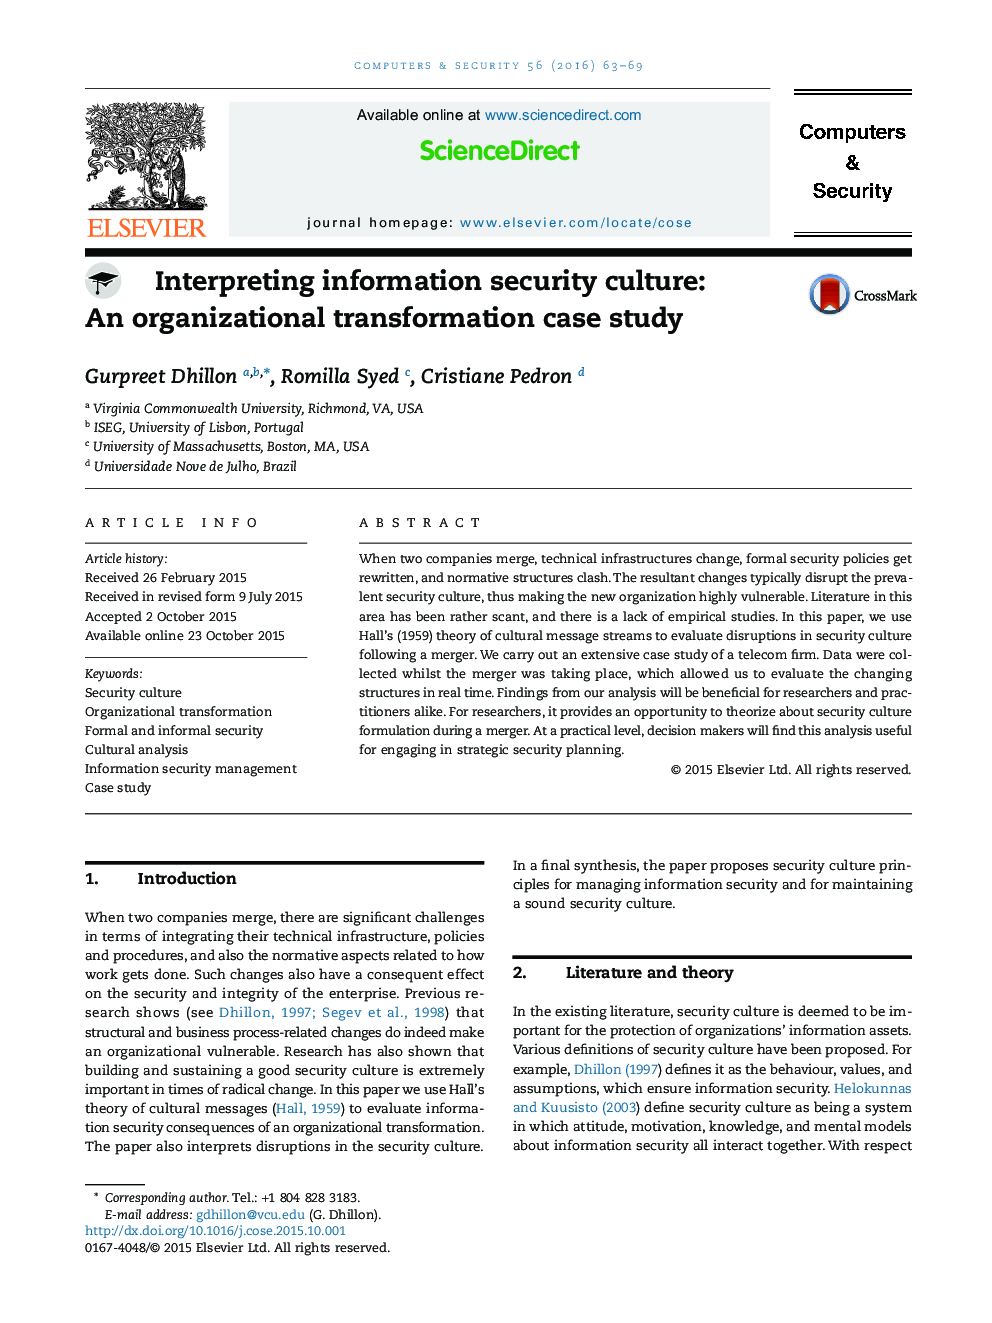 تفسیر فرهنگ امنیت اطلاعات: مطالعه موردی تحول سازمانی 